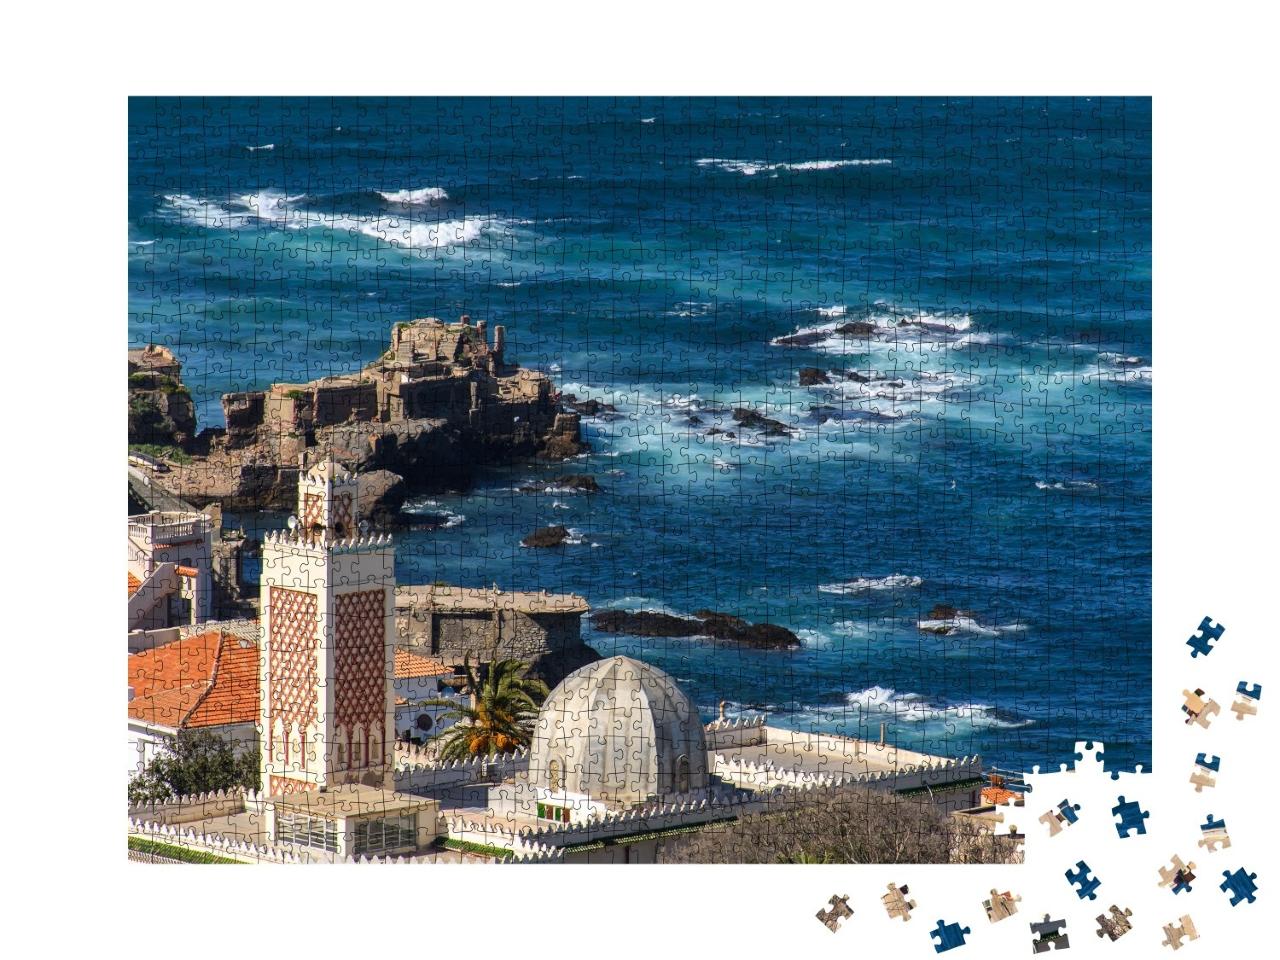 Puzzle de 1000 pièces « Alger, capitale de l'Algérie sur la côte méditerranéenne »